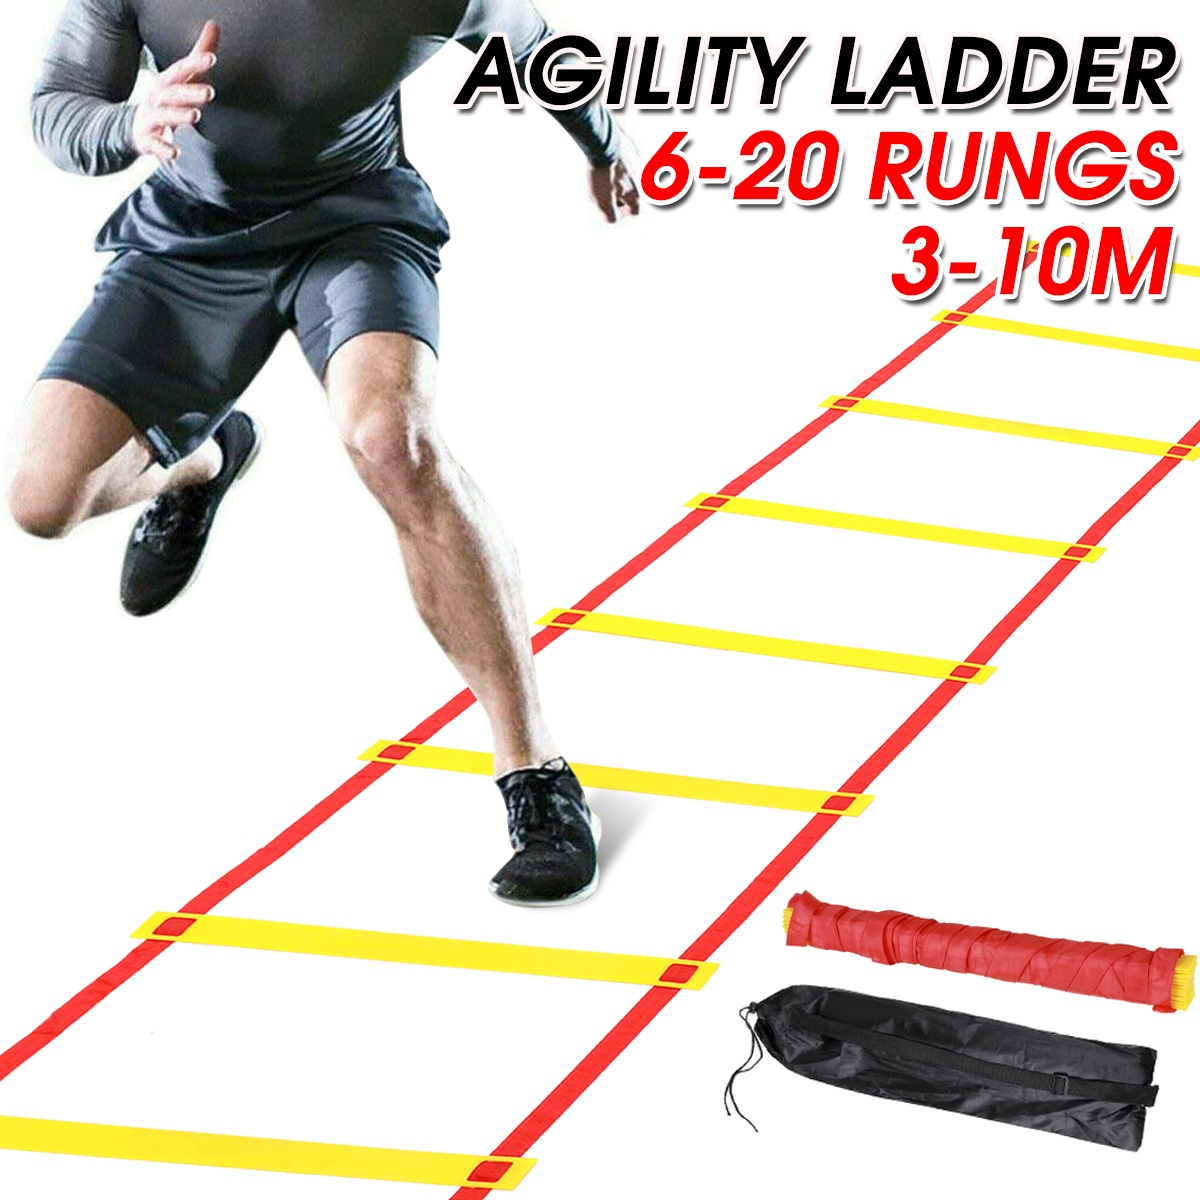 34567810m-Ladder-Ladder-Basketball-Football-Soccer-Sports-Speed-Training-Equipment-Fitness-Exercise-1795322-1